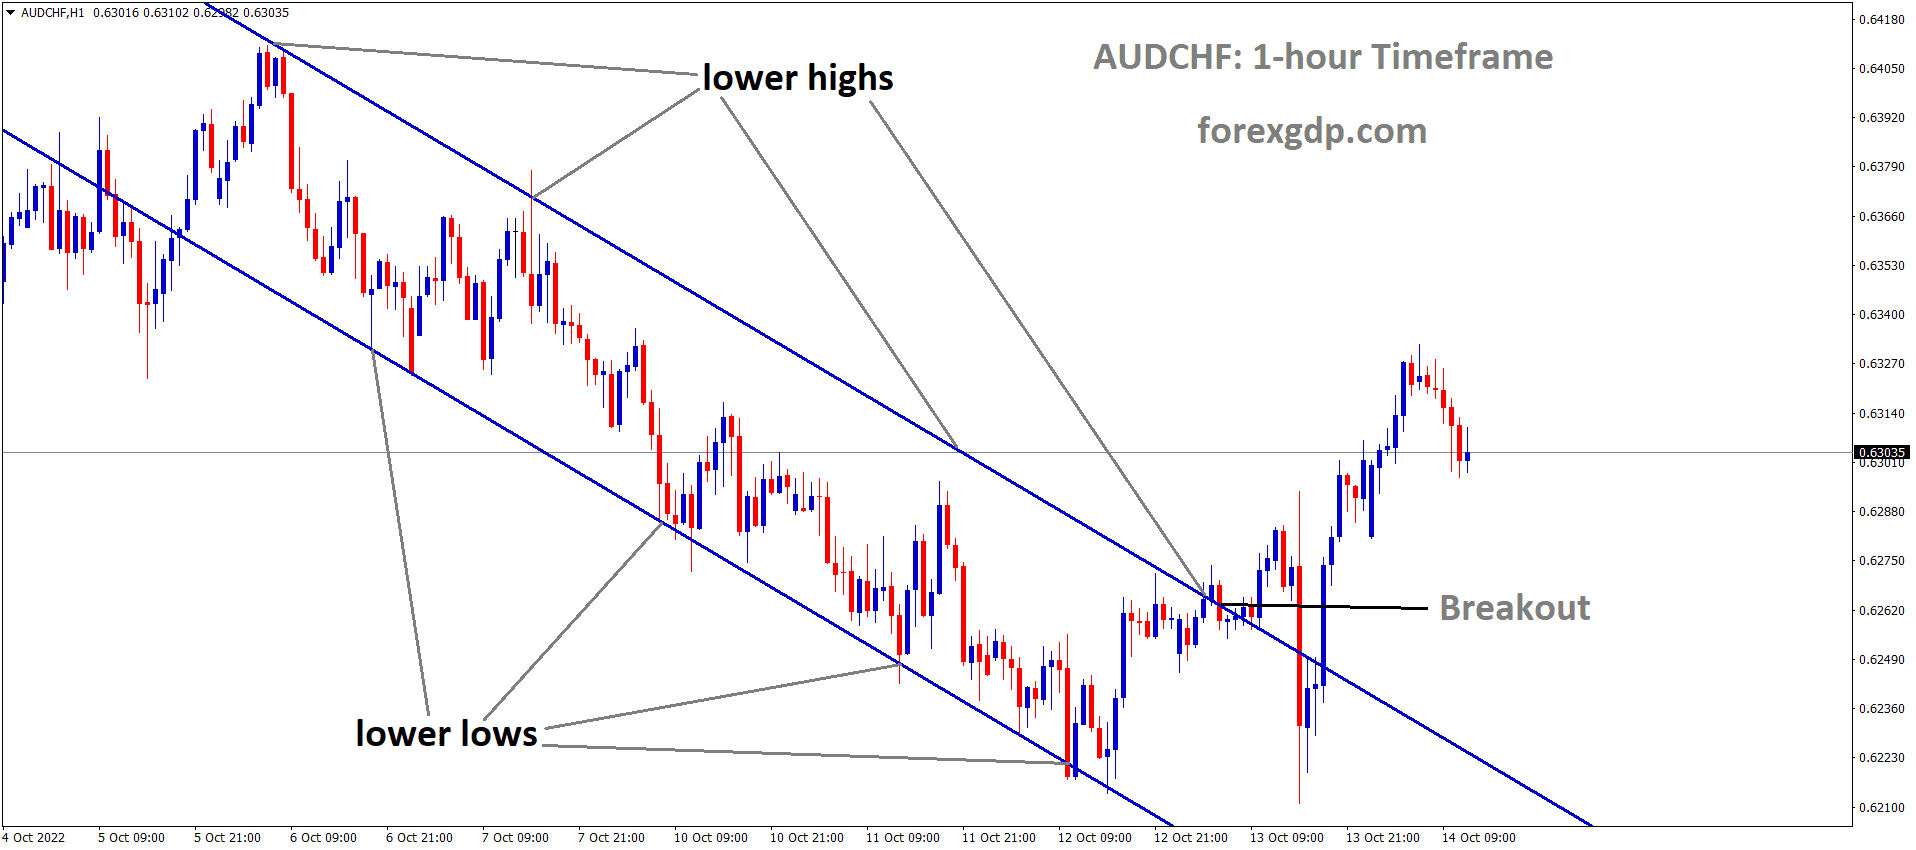 AUDCHF has broken the Descending channel in Upside